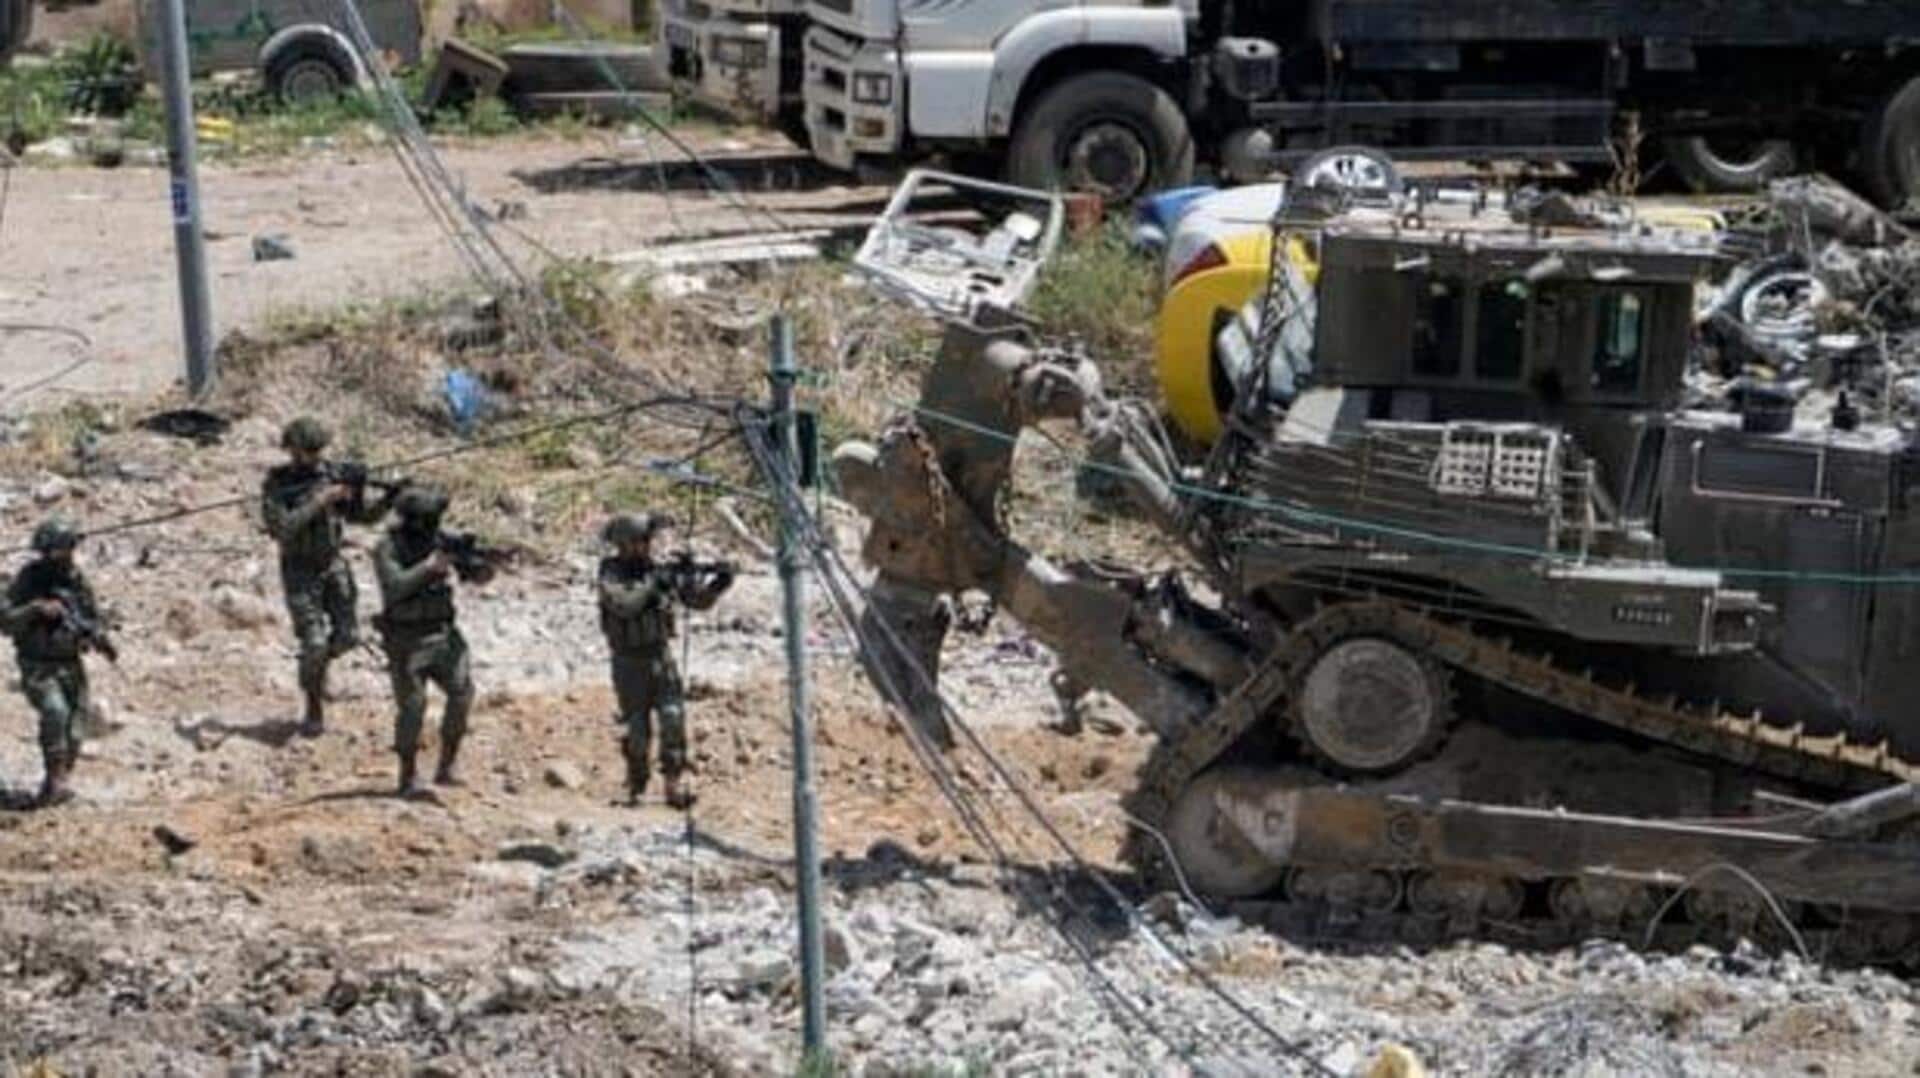 IDF-Hamas-West bank: ఐడీఎఫ్ కాల్పుల్లో హమాస్ వెస్ట్ బ్యాంక్ కమాండర్ మృతి..మరో ముగ్గురు కూడా..